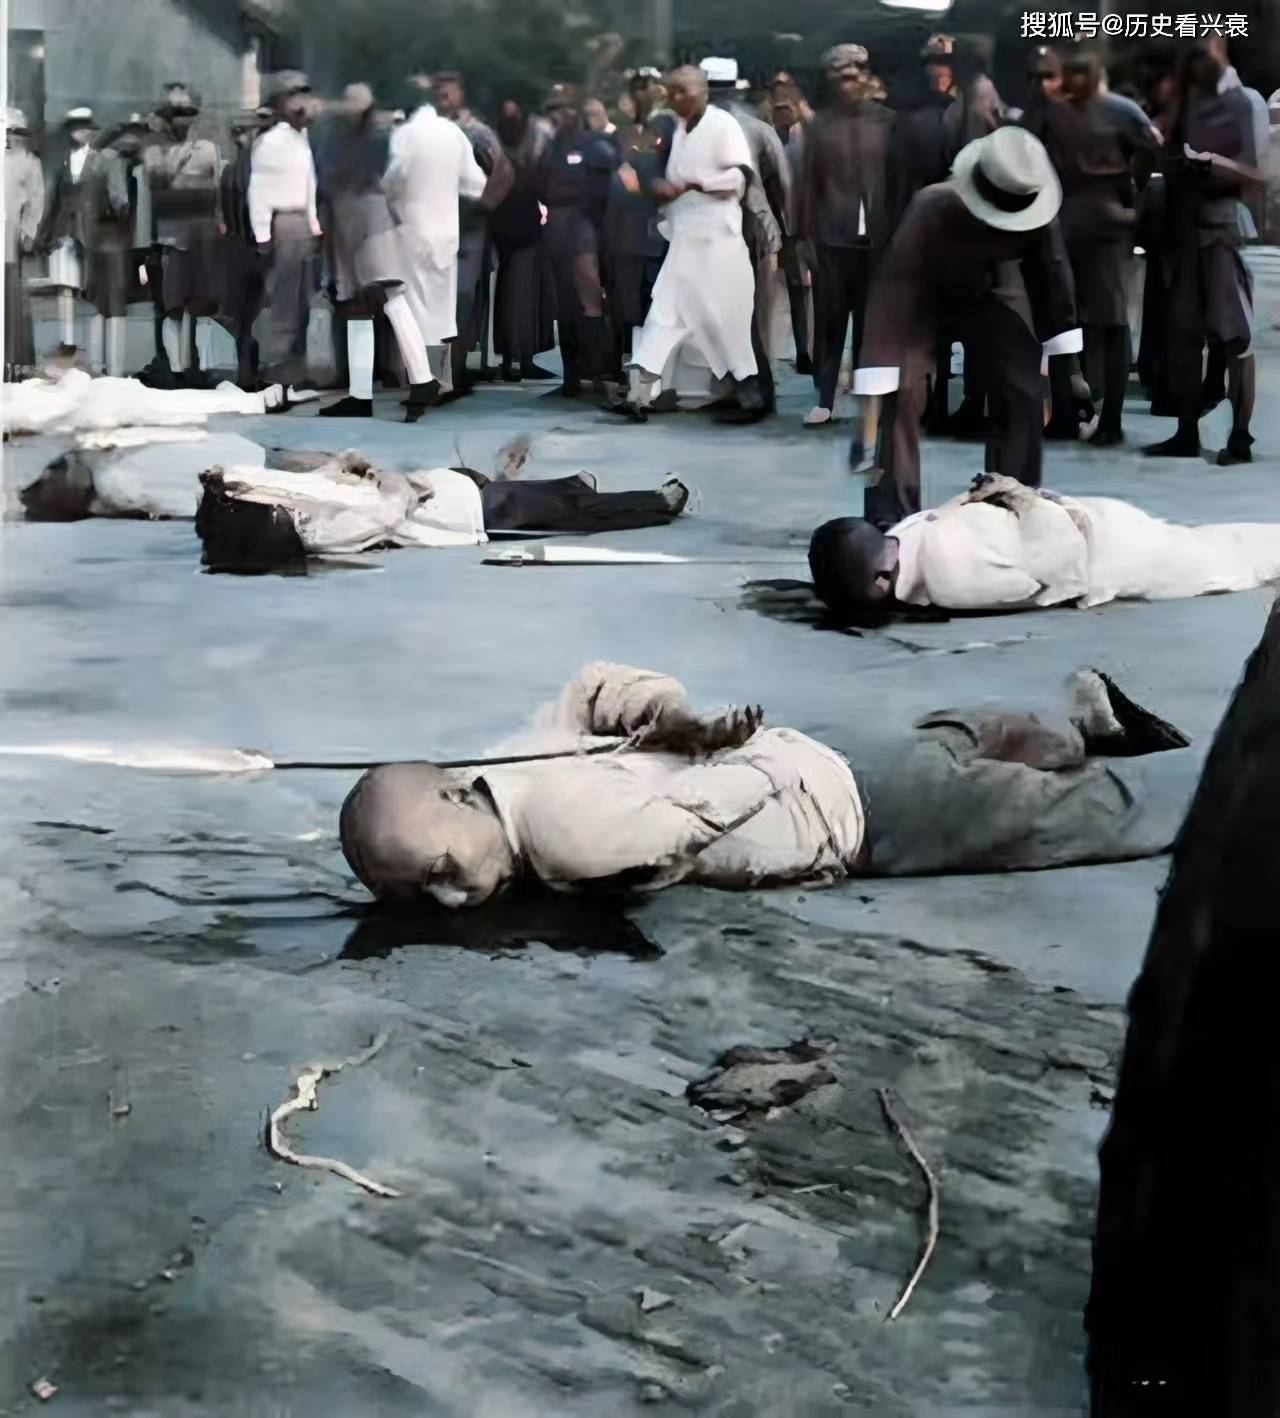 老照片:被日寇杀害的太鲁阁族人,民国时期处决犯人的现场